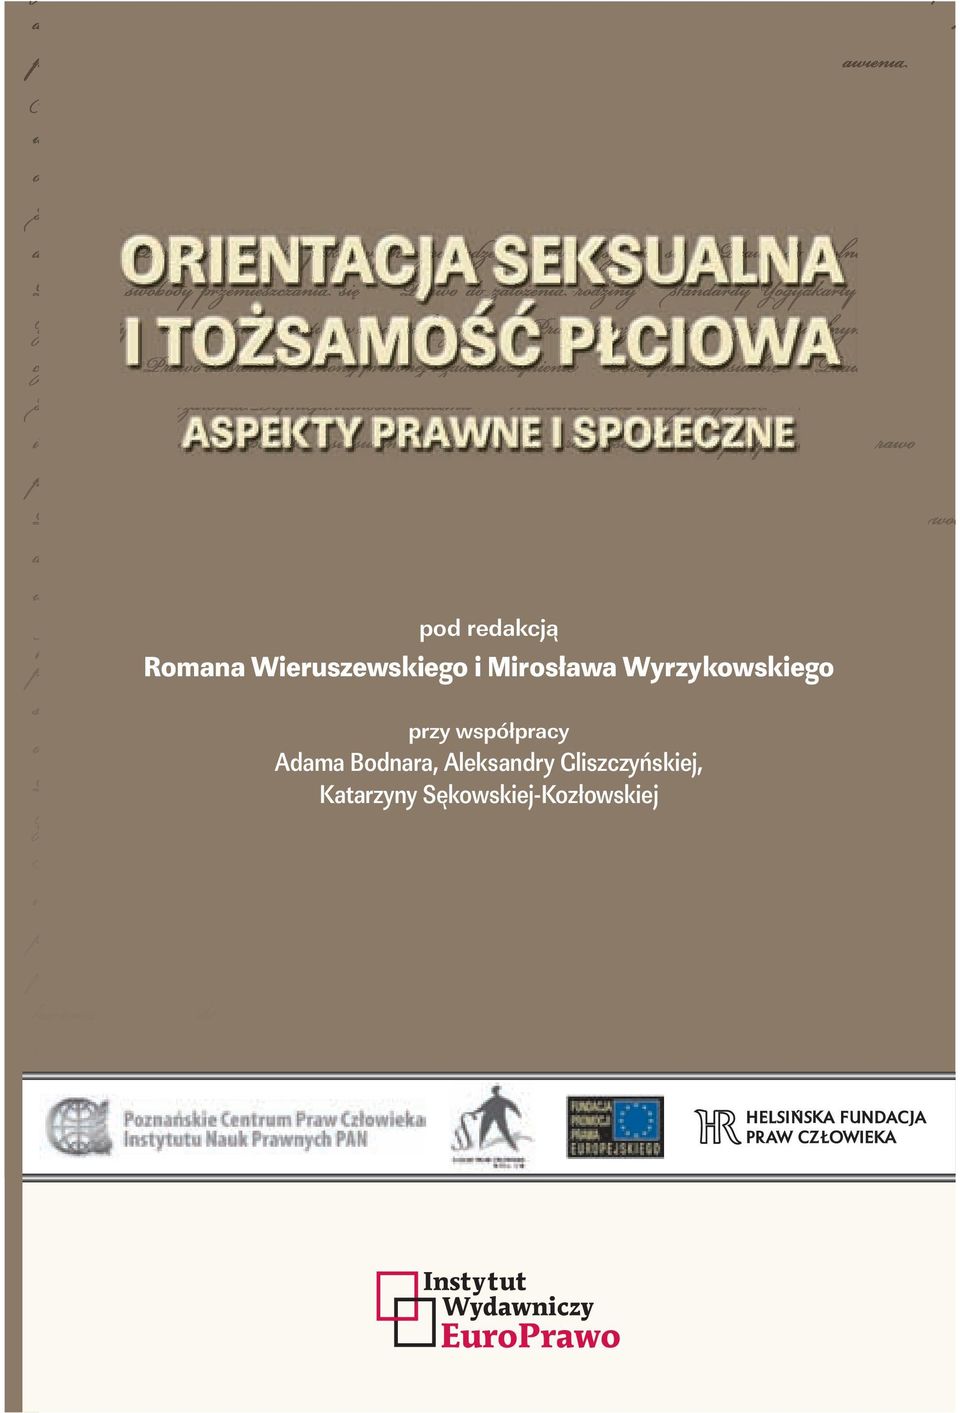 Aspekty prawne i społeczne zawiera materiały z dwóch ogólnopolskich konferencji poświęconych tej tematyce, które odbyły się w Warszawie i Poznaniu, oraz polskie tłumaczenie Zasad Yogyakarty dokumentu